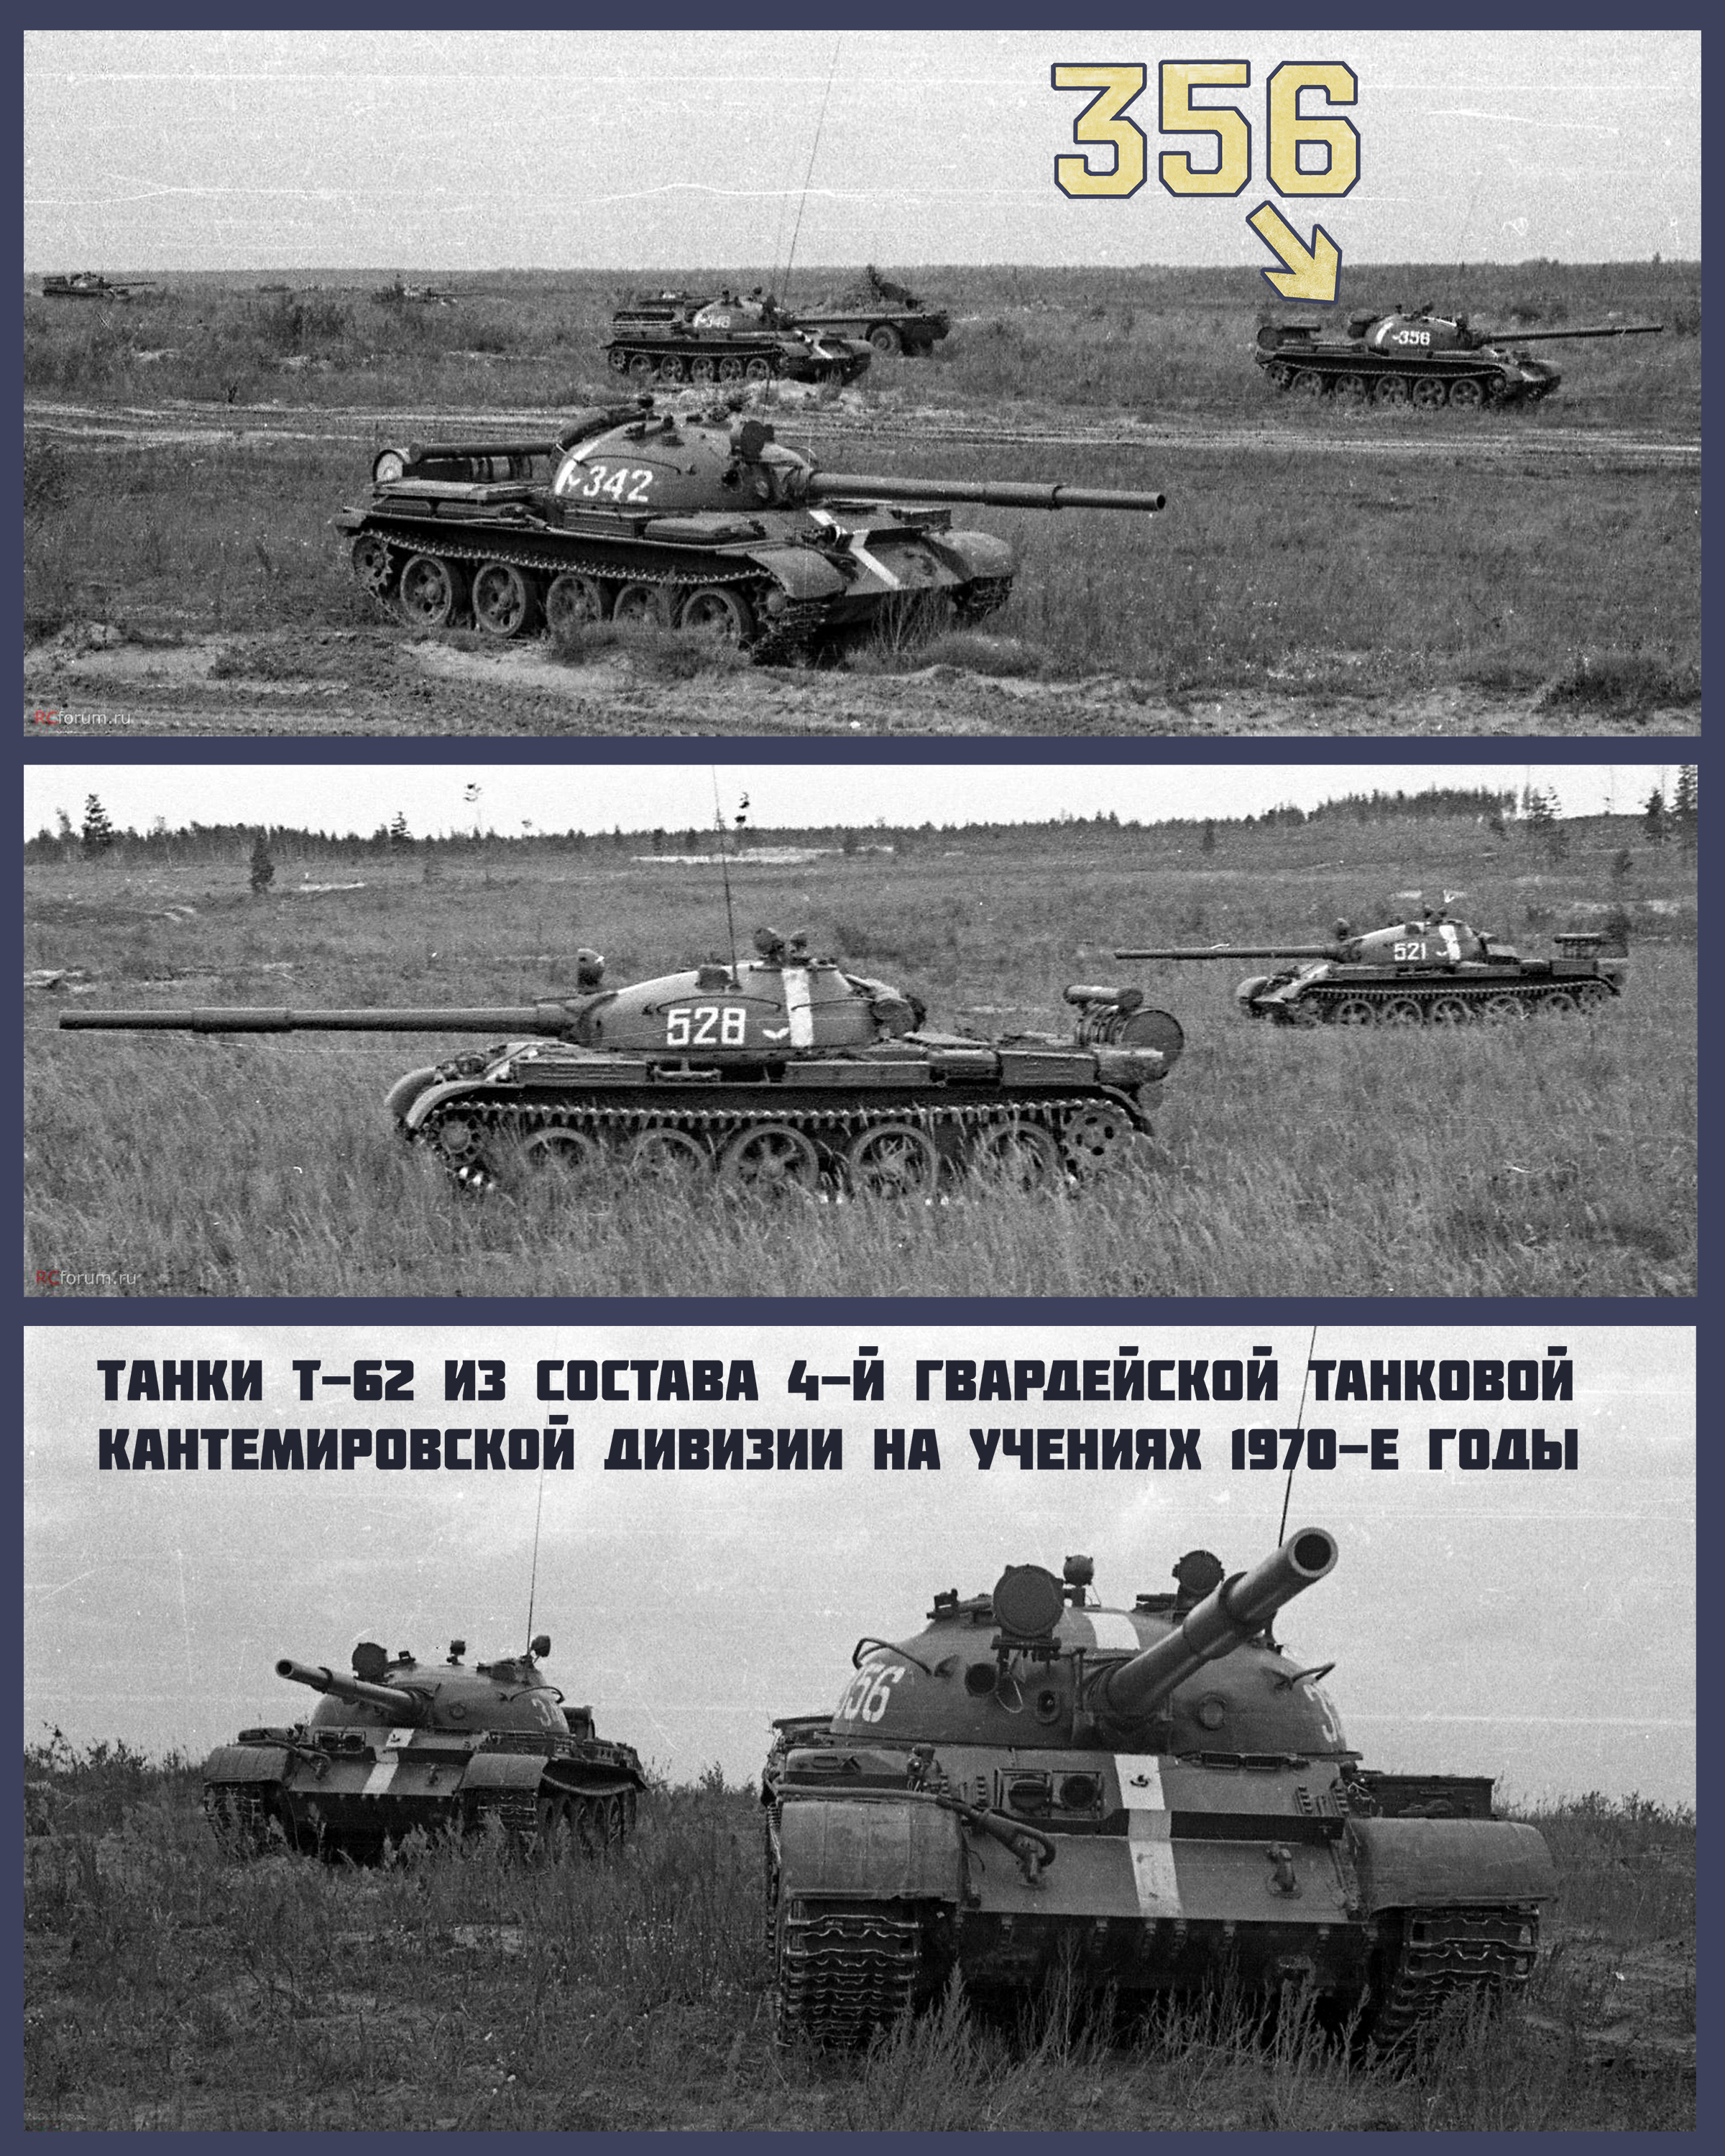 12 гвардейский танковый полк кантемировской дивизии